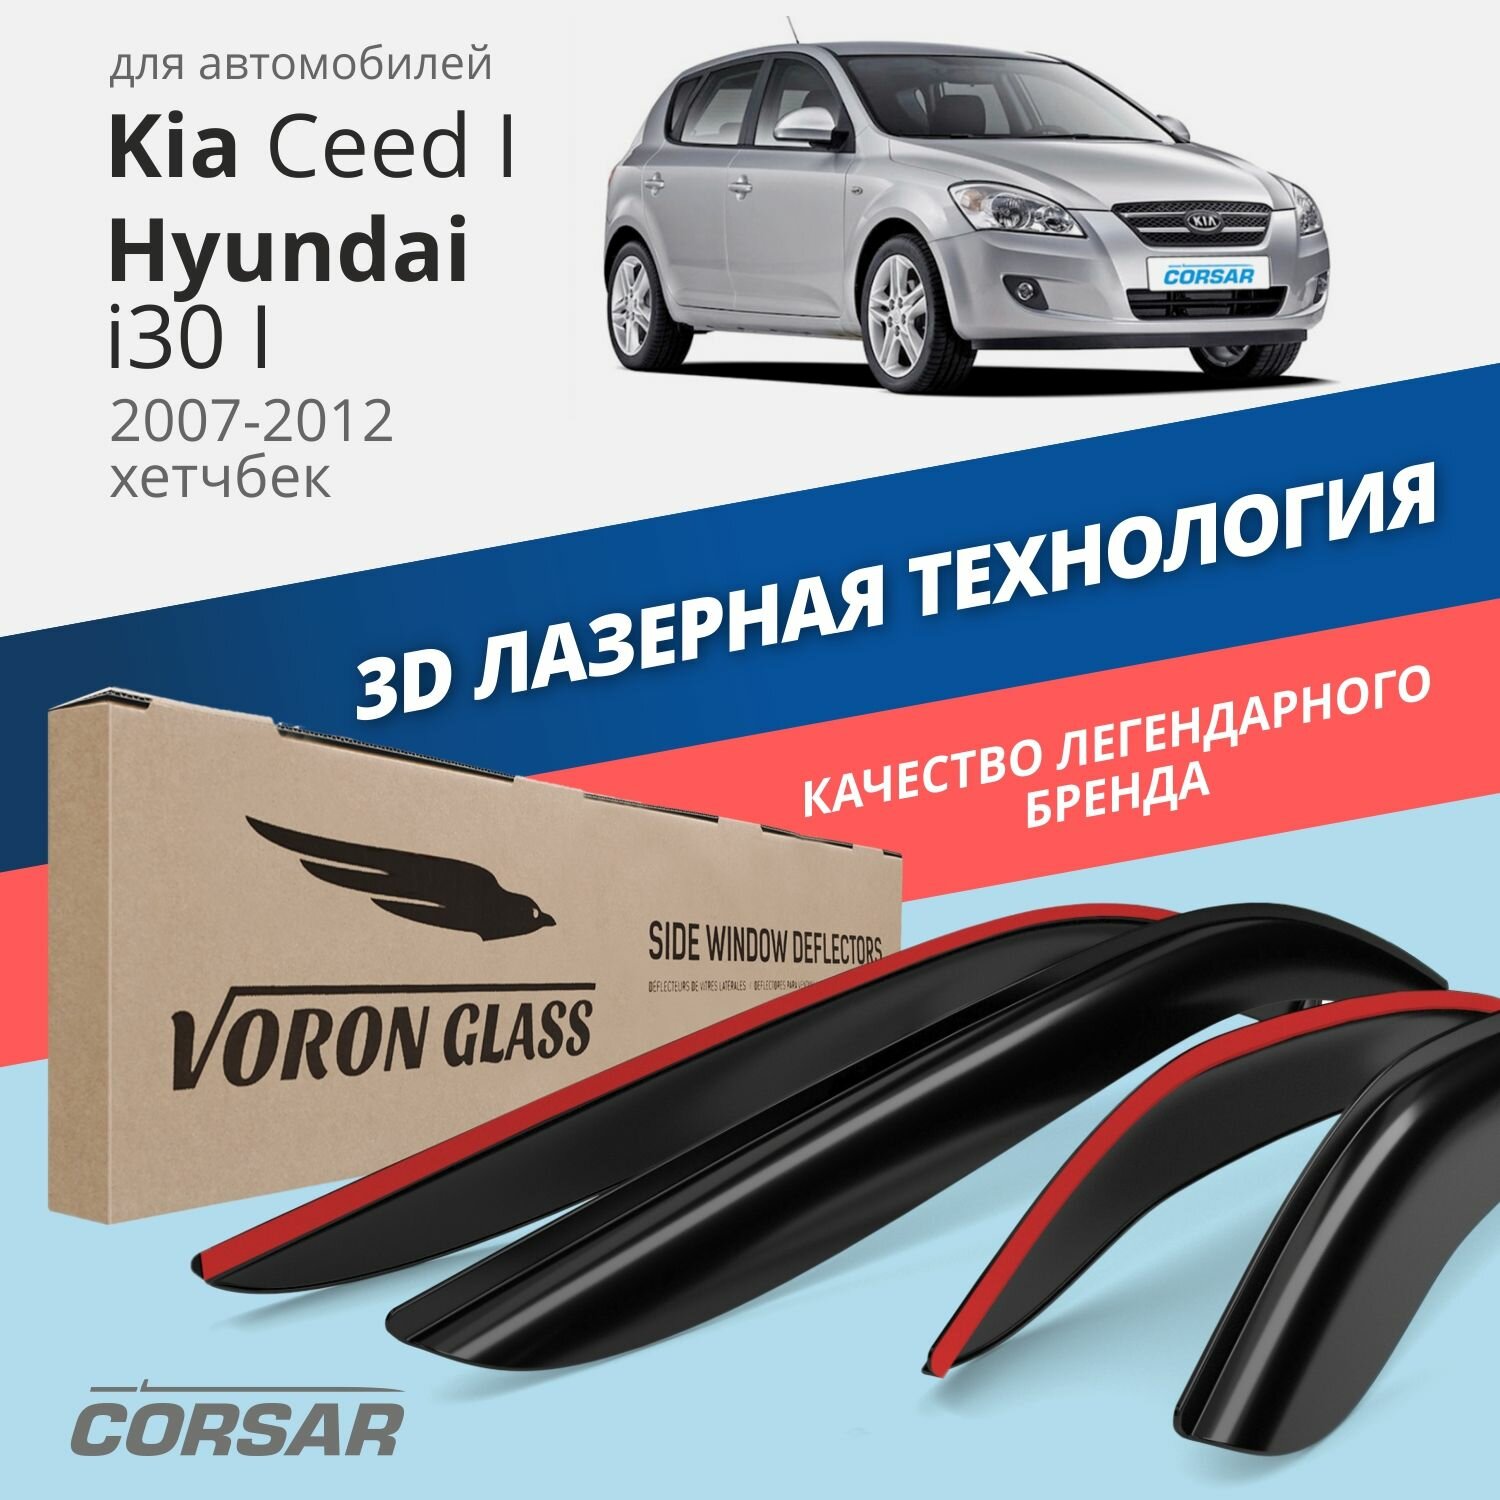 Дефлекторы окон Voron Glass серия Corsar для Kia Ceed I / Hyundai i30 I хэтчбек накладные 4 шт.